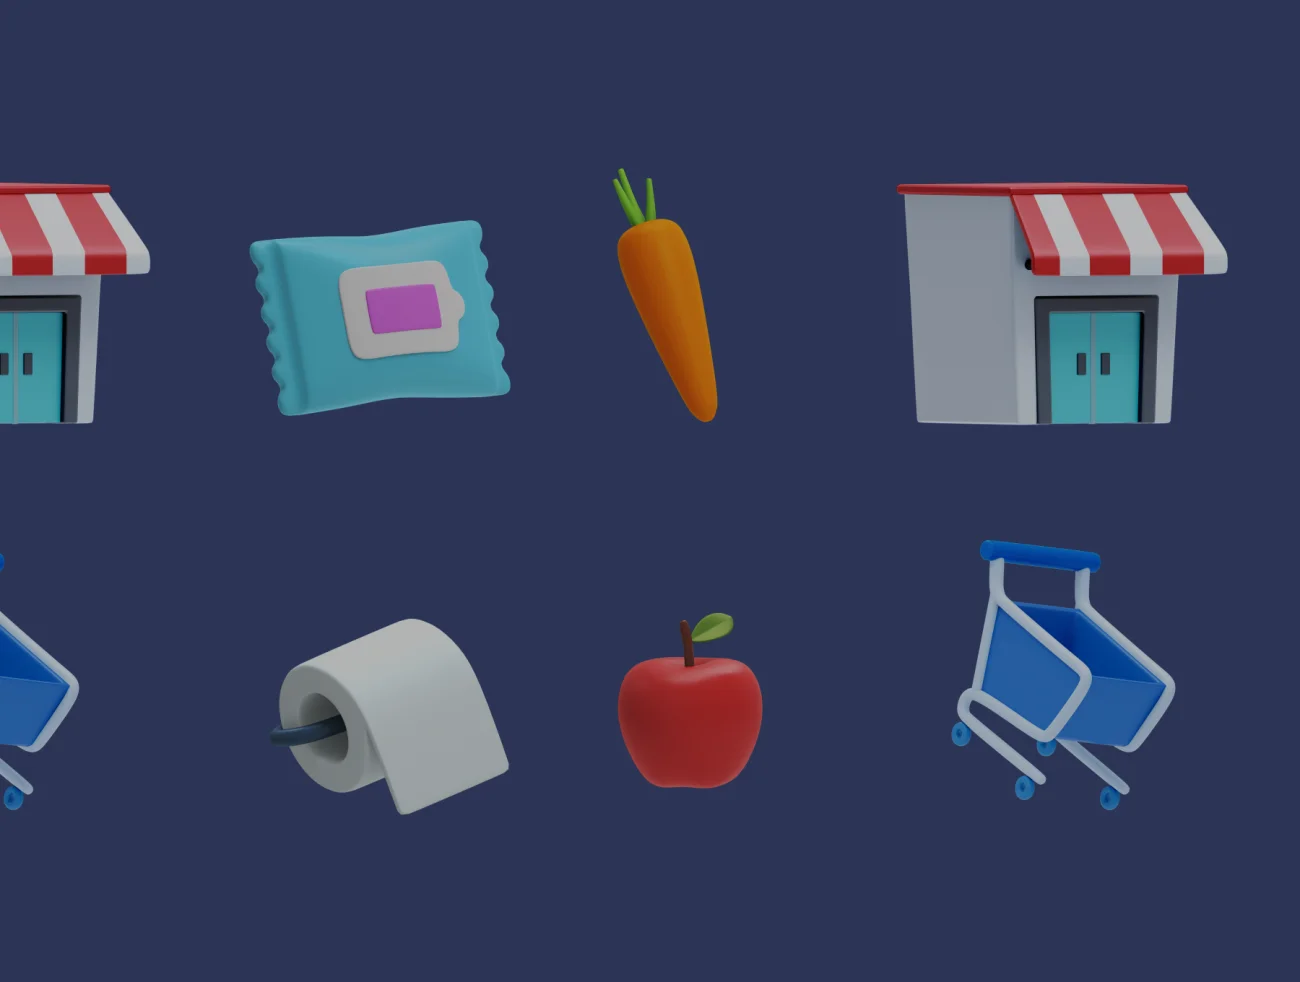 50个生鲜水果日用品生活物品采购3D图标 Reebie 3D Groceries Pack插图13